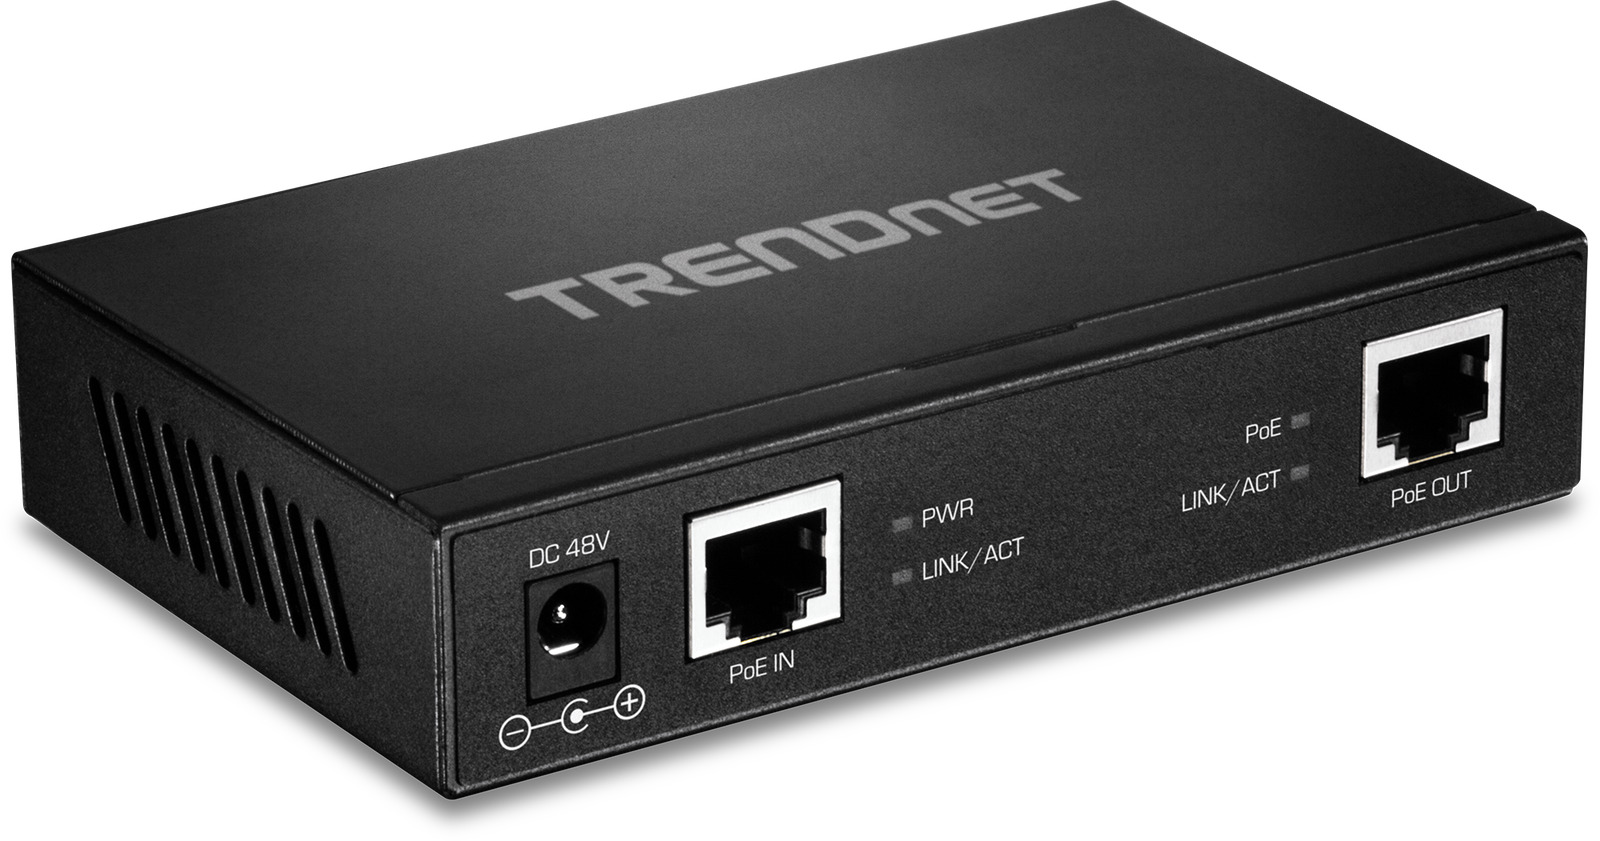 Trendnet Tpe-e110 Gigabit Poe+ Repeater/amplifier